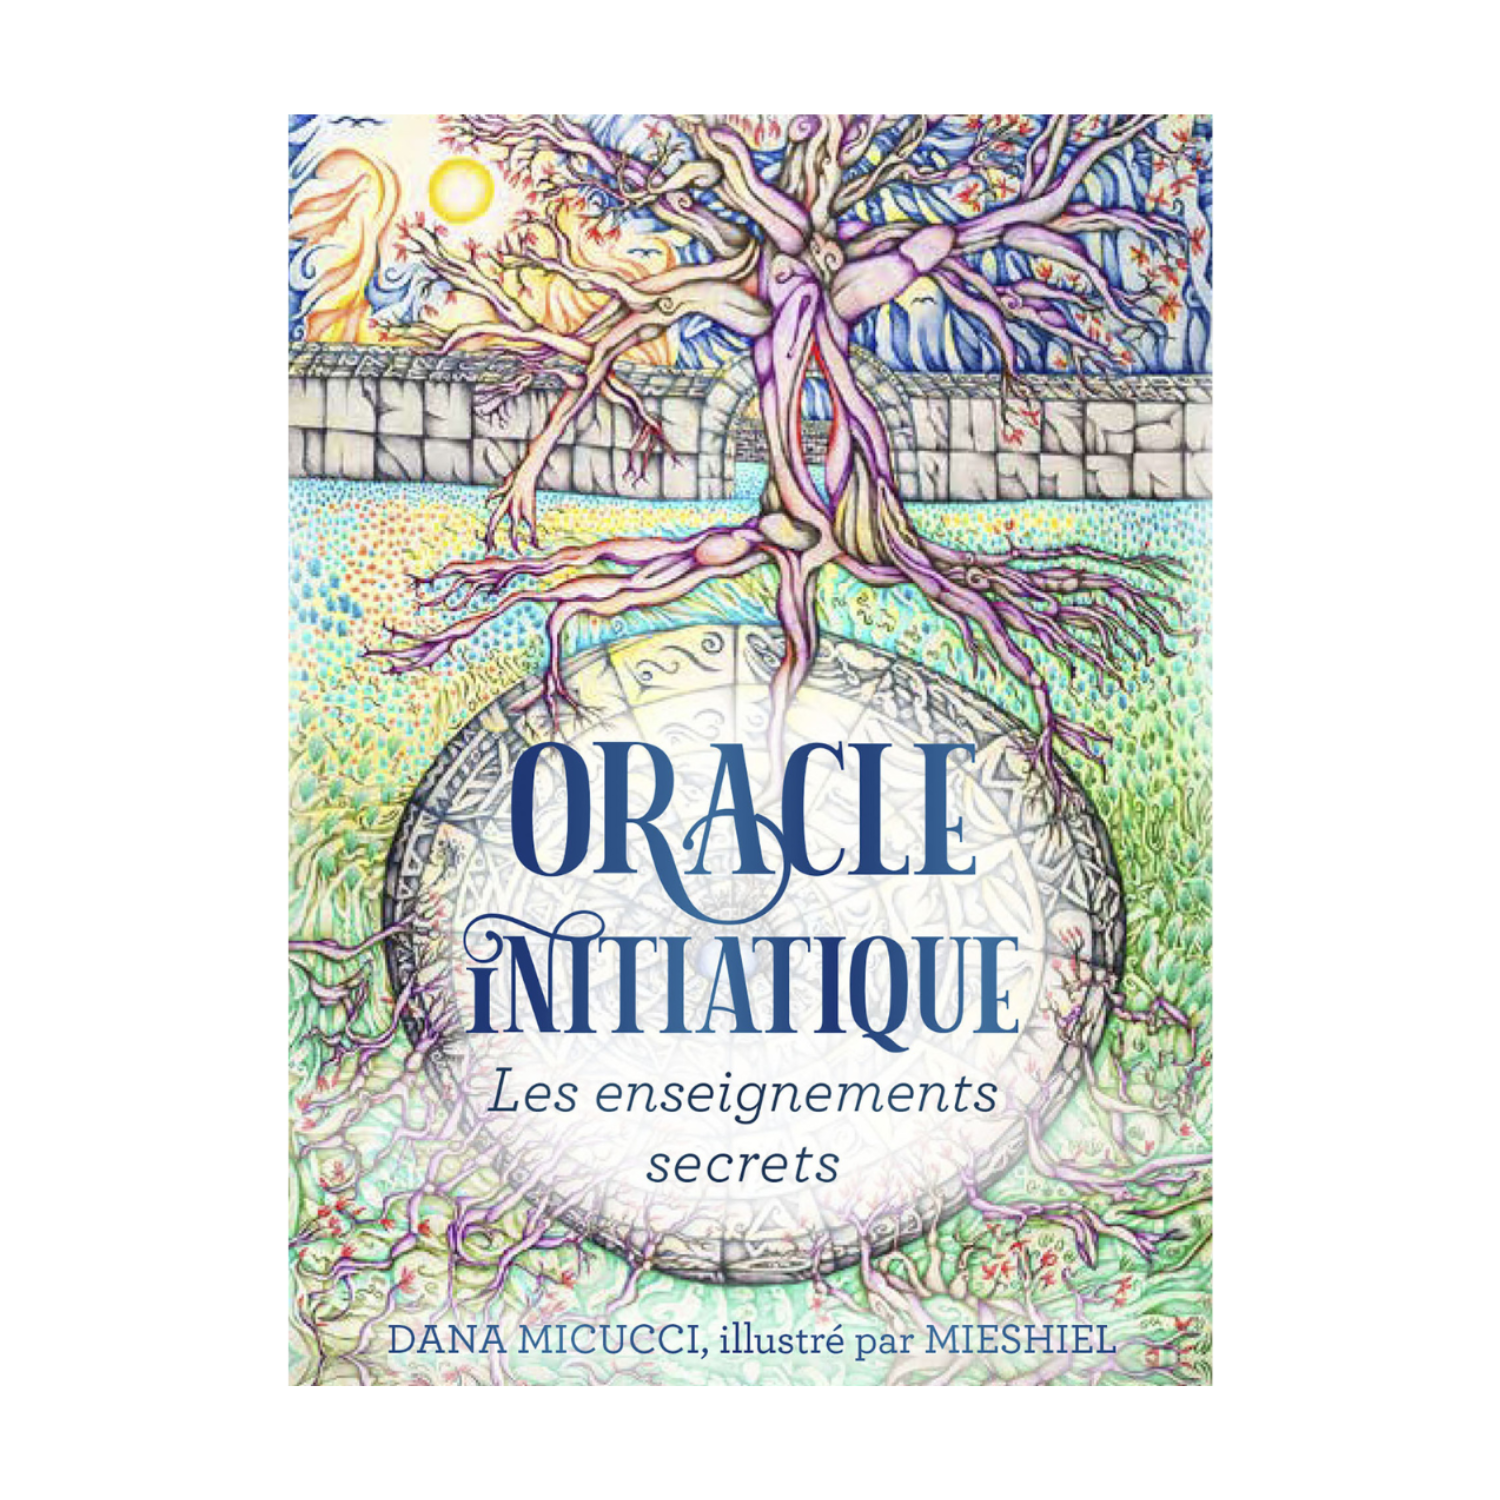 Oracle initiatique